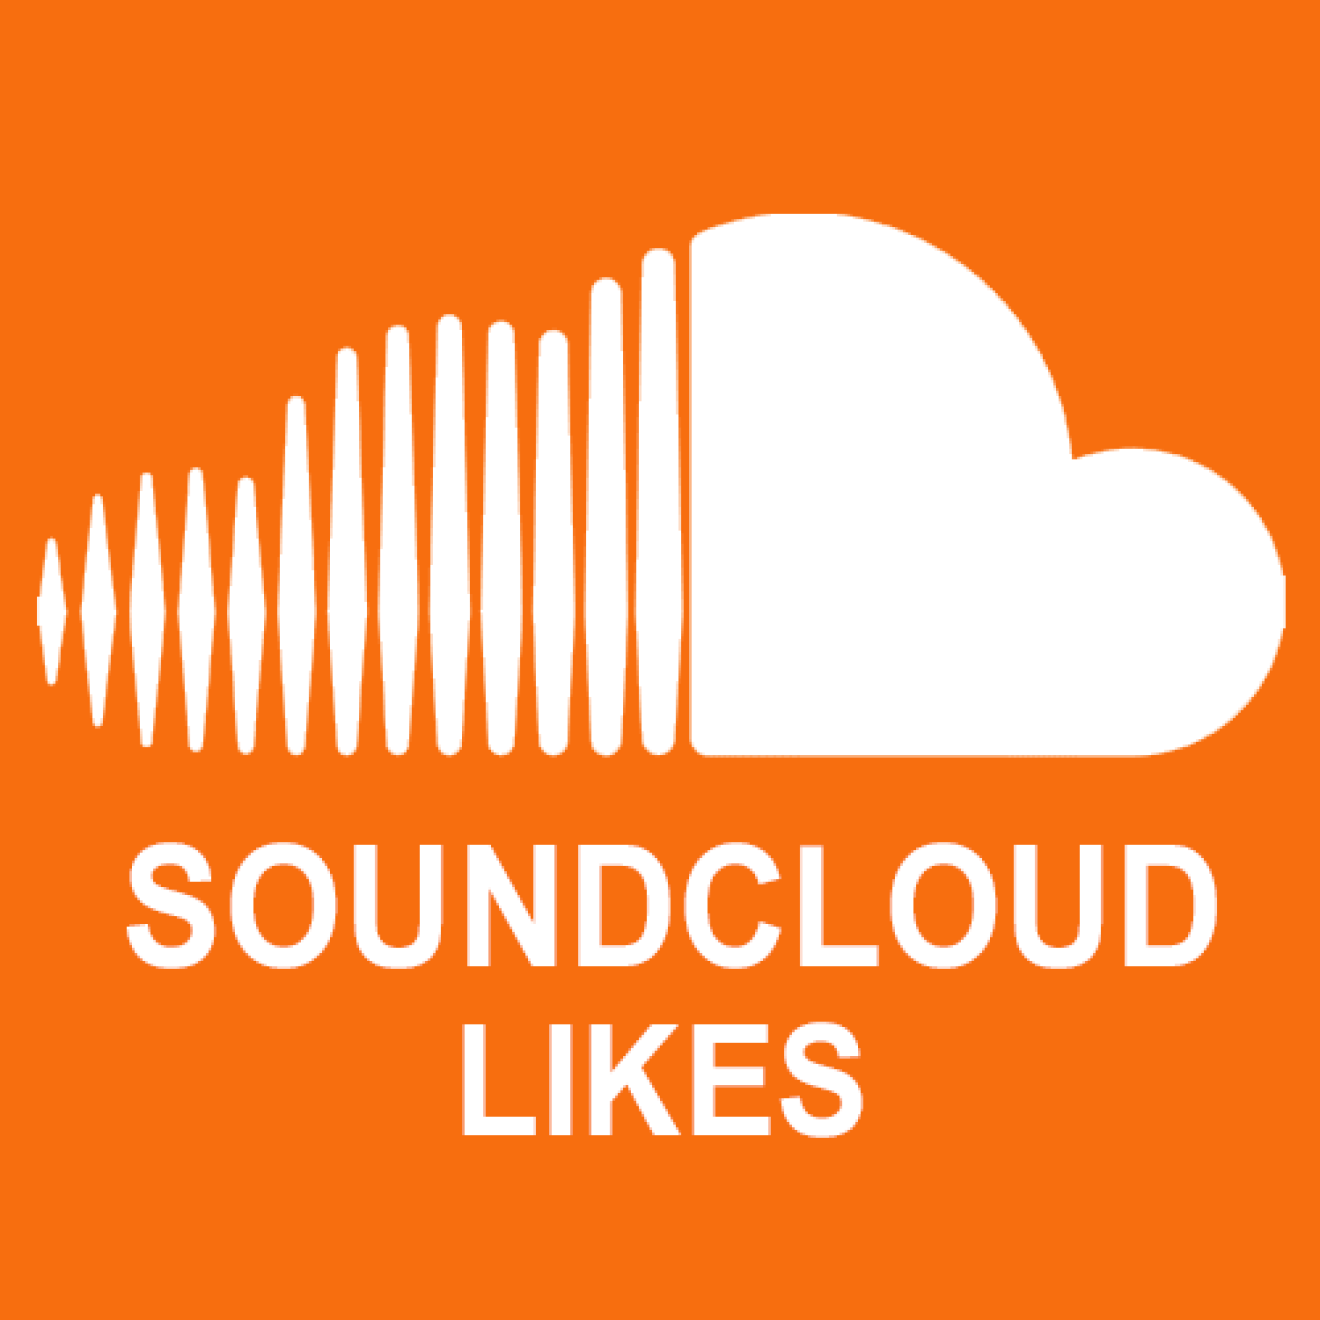 15000 Soundcloud Likes / Gefällt mir Angaben für Dich